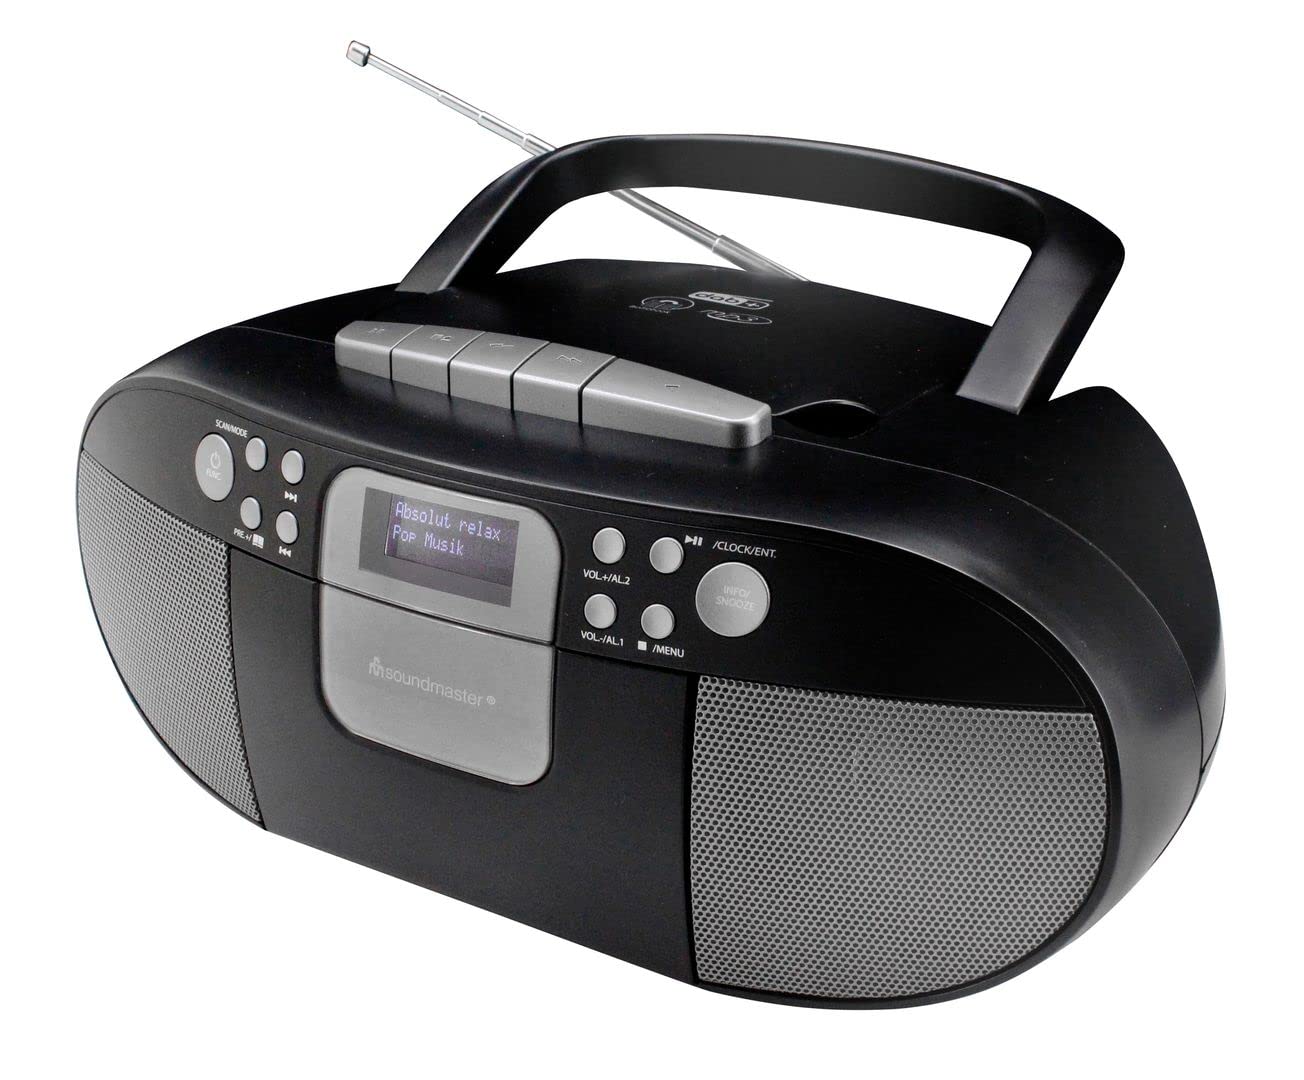 Audio & Hi-Fi Soundmaster: Boombox With Dab+/Fm Radio - Cd - Mp3 - Cassette - Usb And Bluetooth NUOVO SIGILLATO SUBITO DISPONIBILE